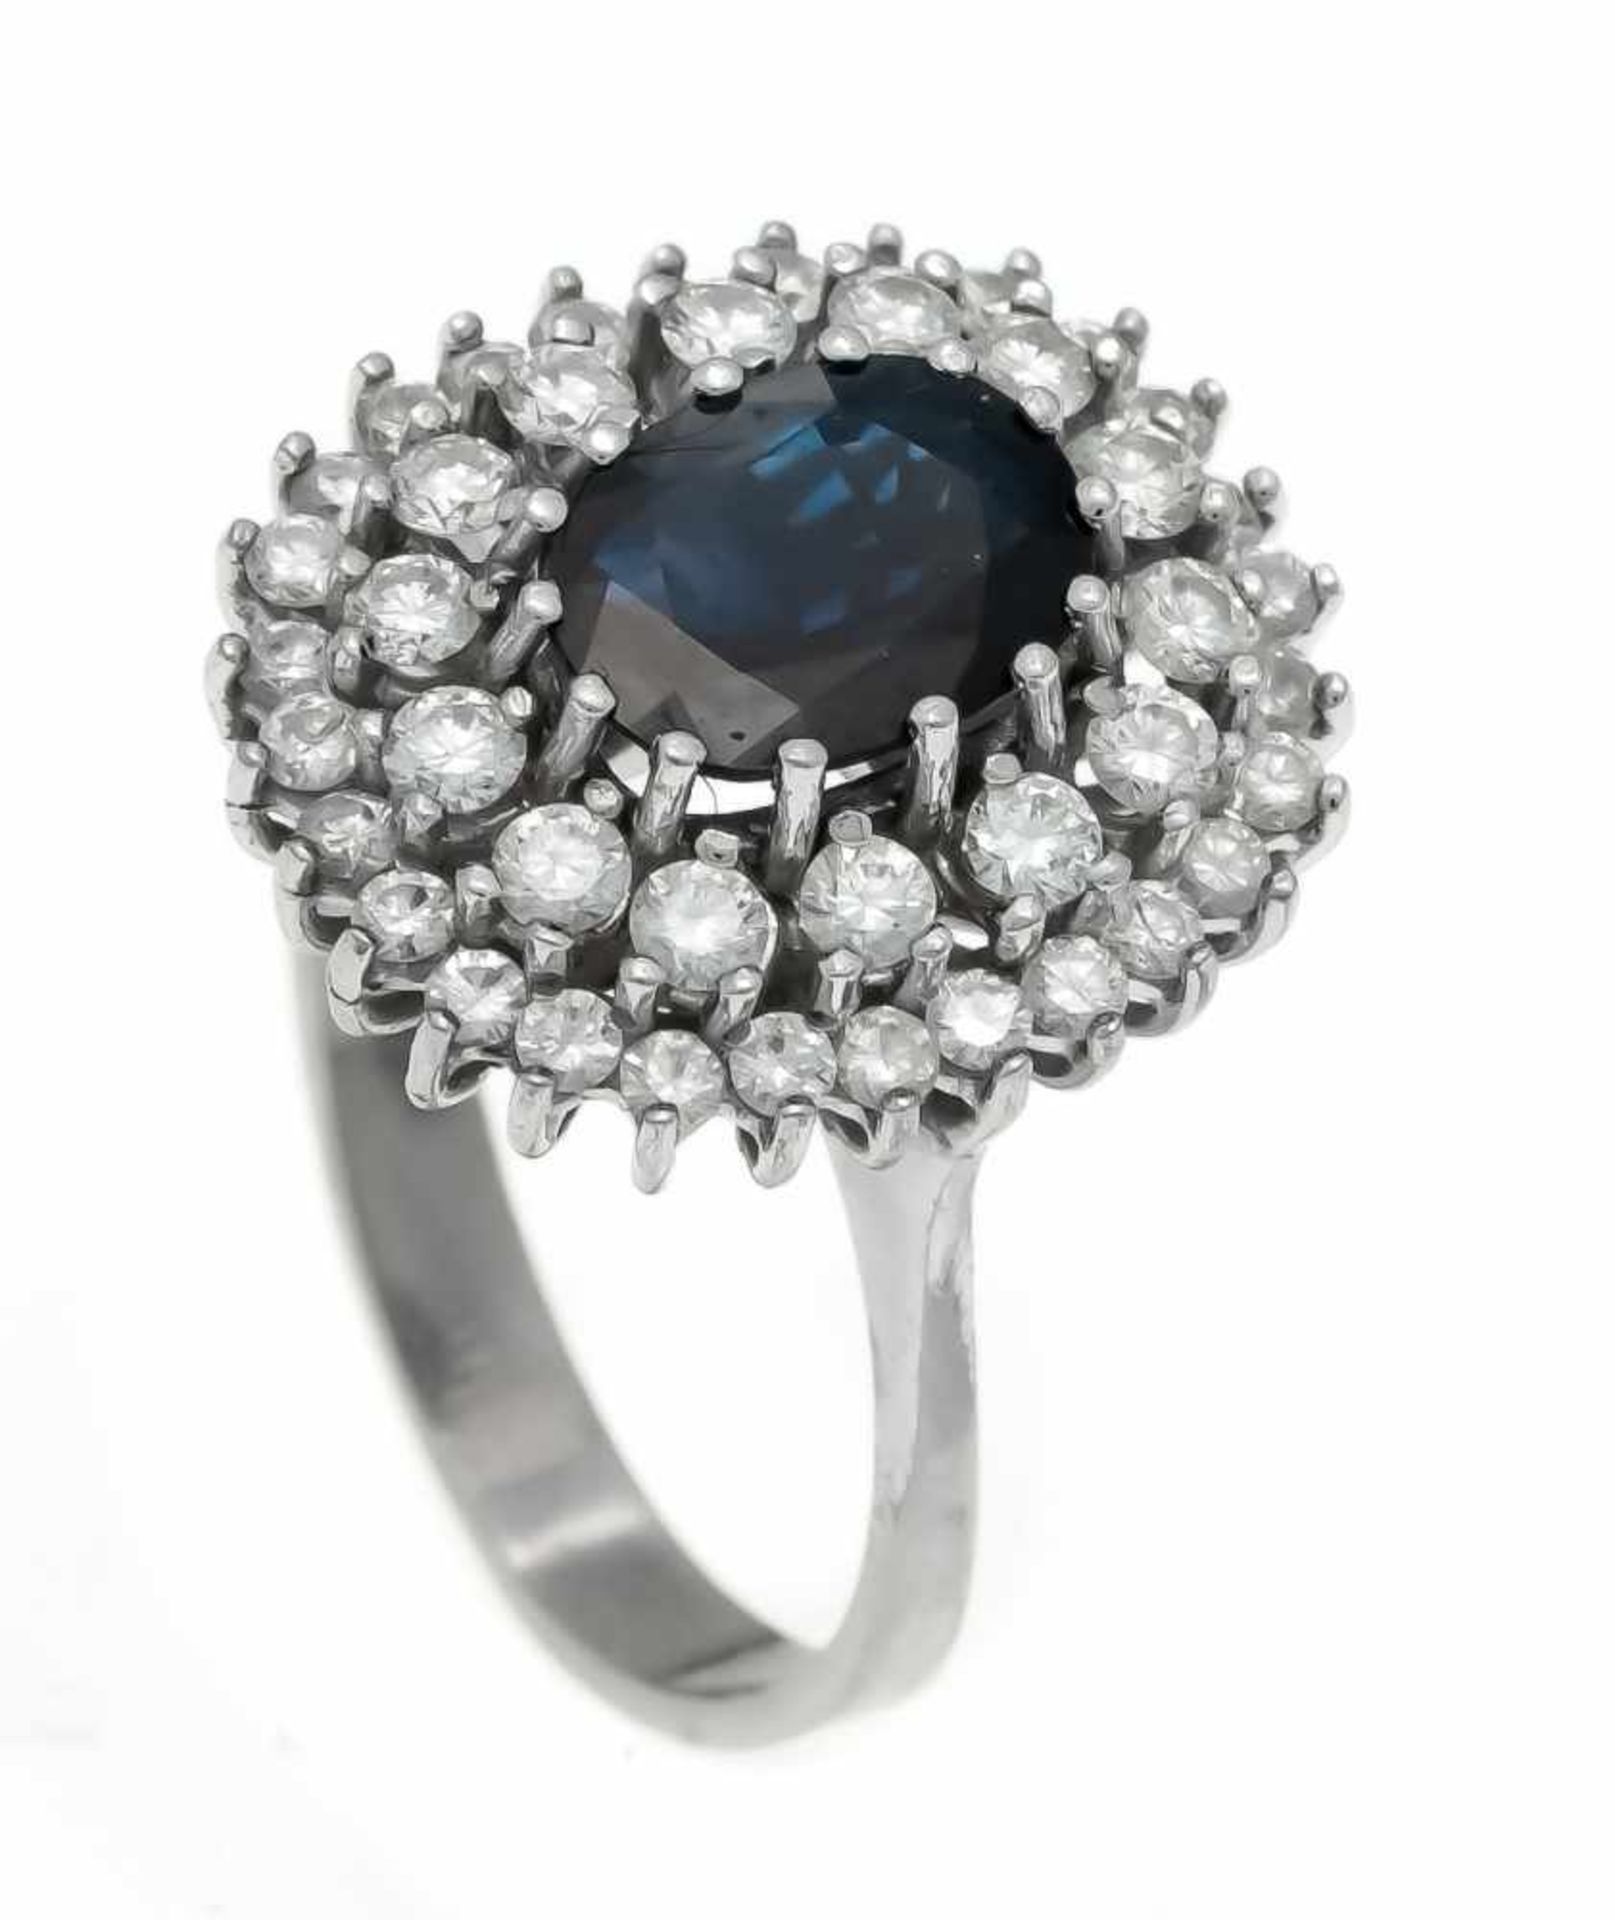 Saphir-Brillant-Ring WG 585/000 mit einem oval fac. Saphir 8,8 x 6,0 mm in einem Dunkelblau und 42